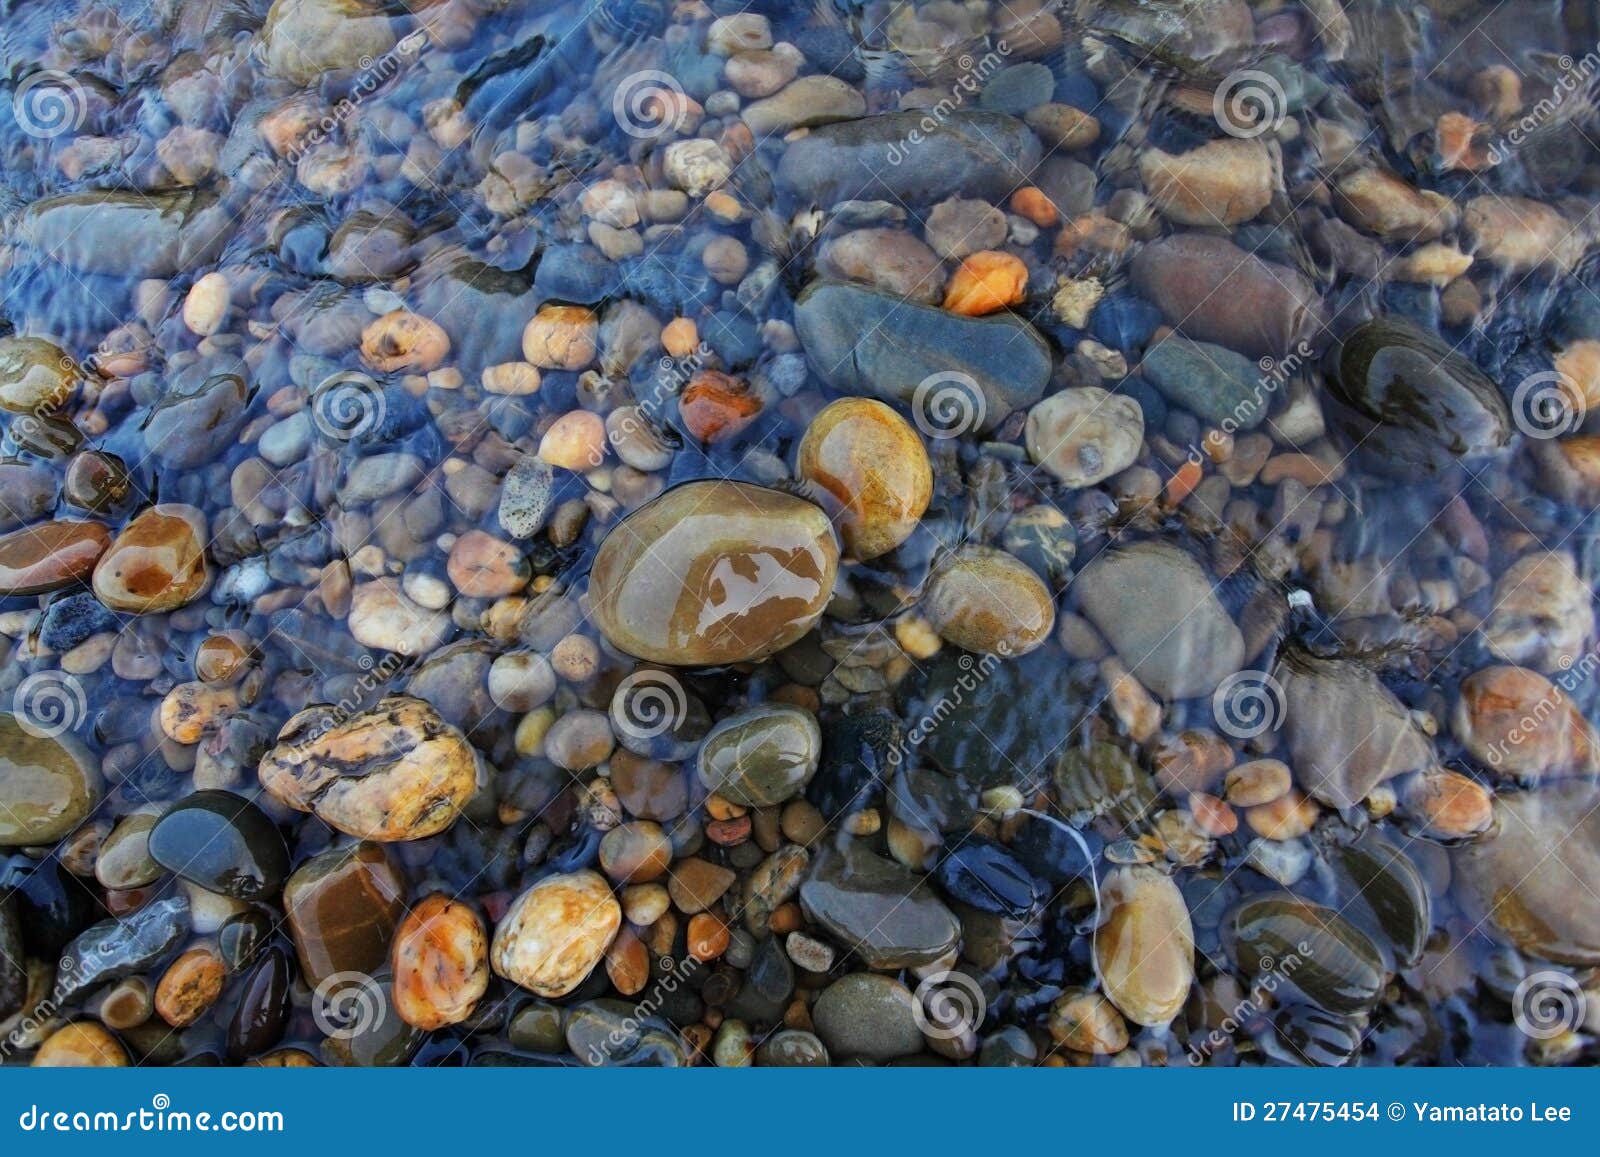 river rocks